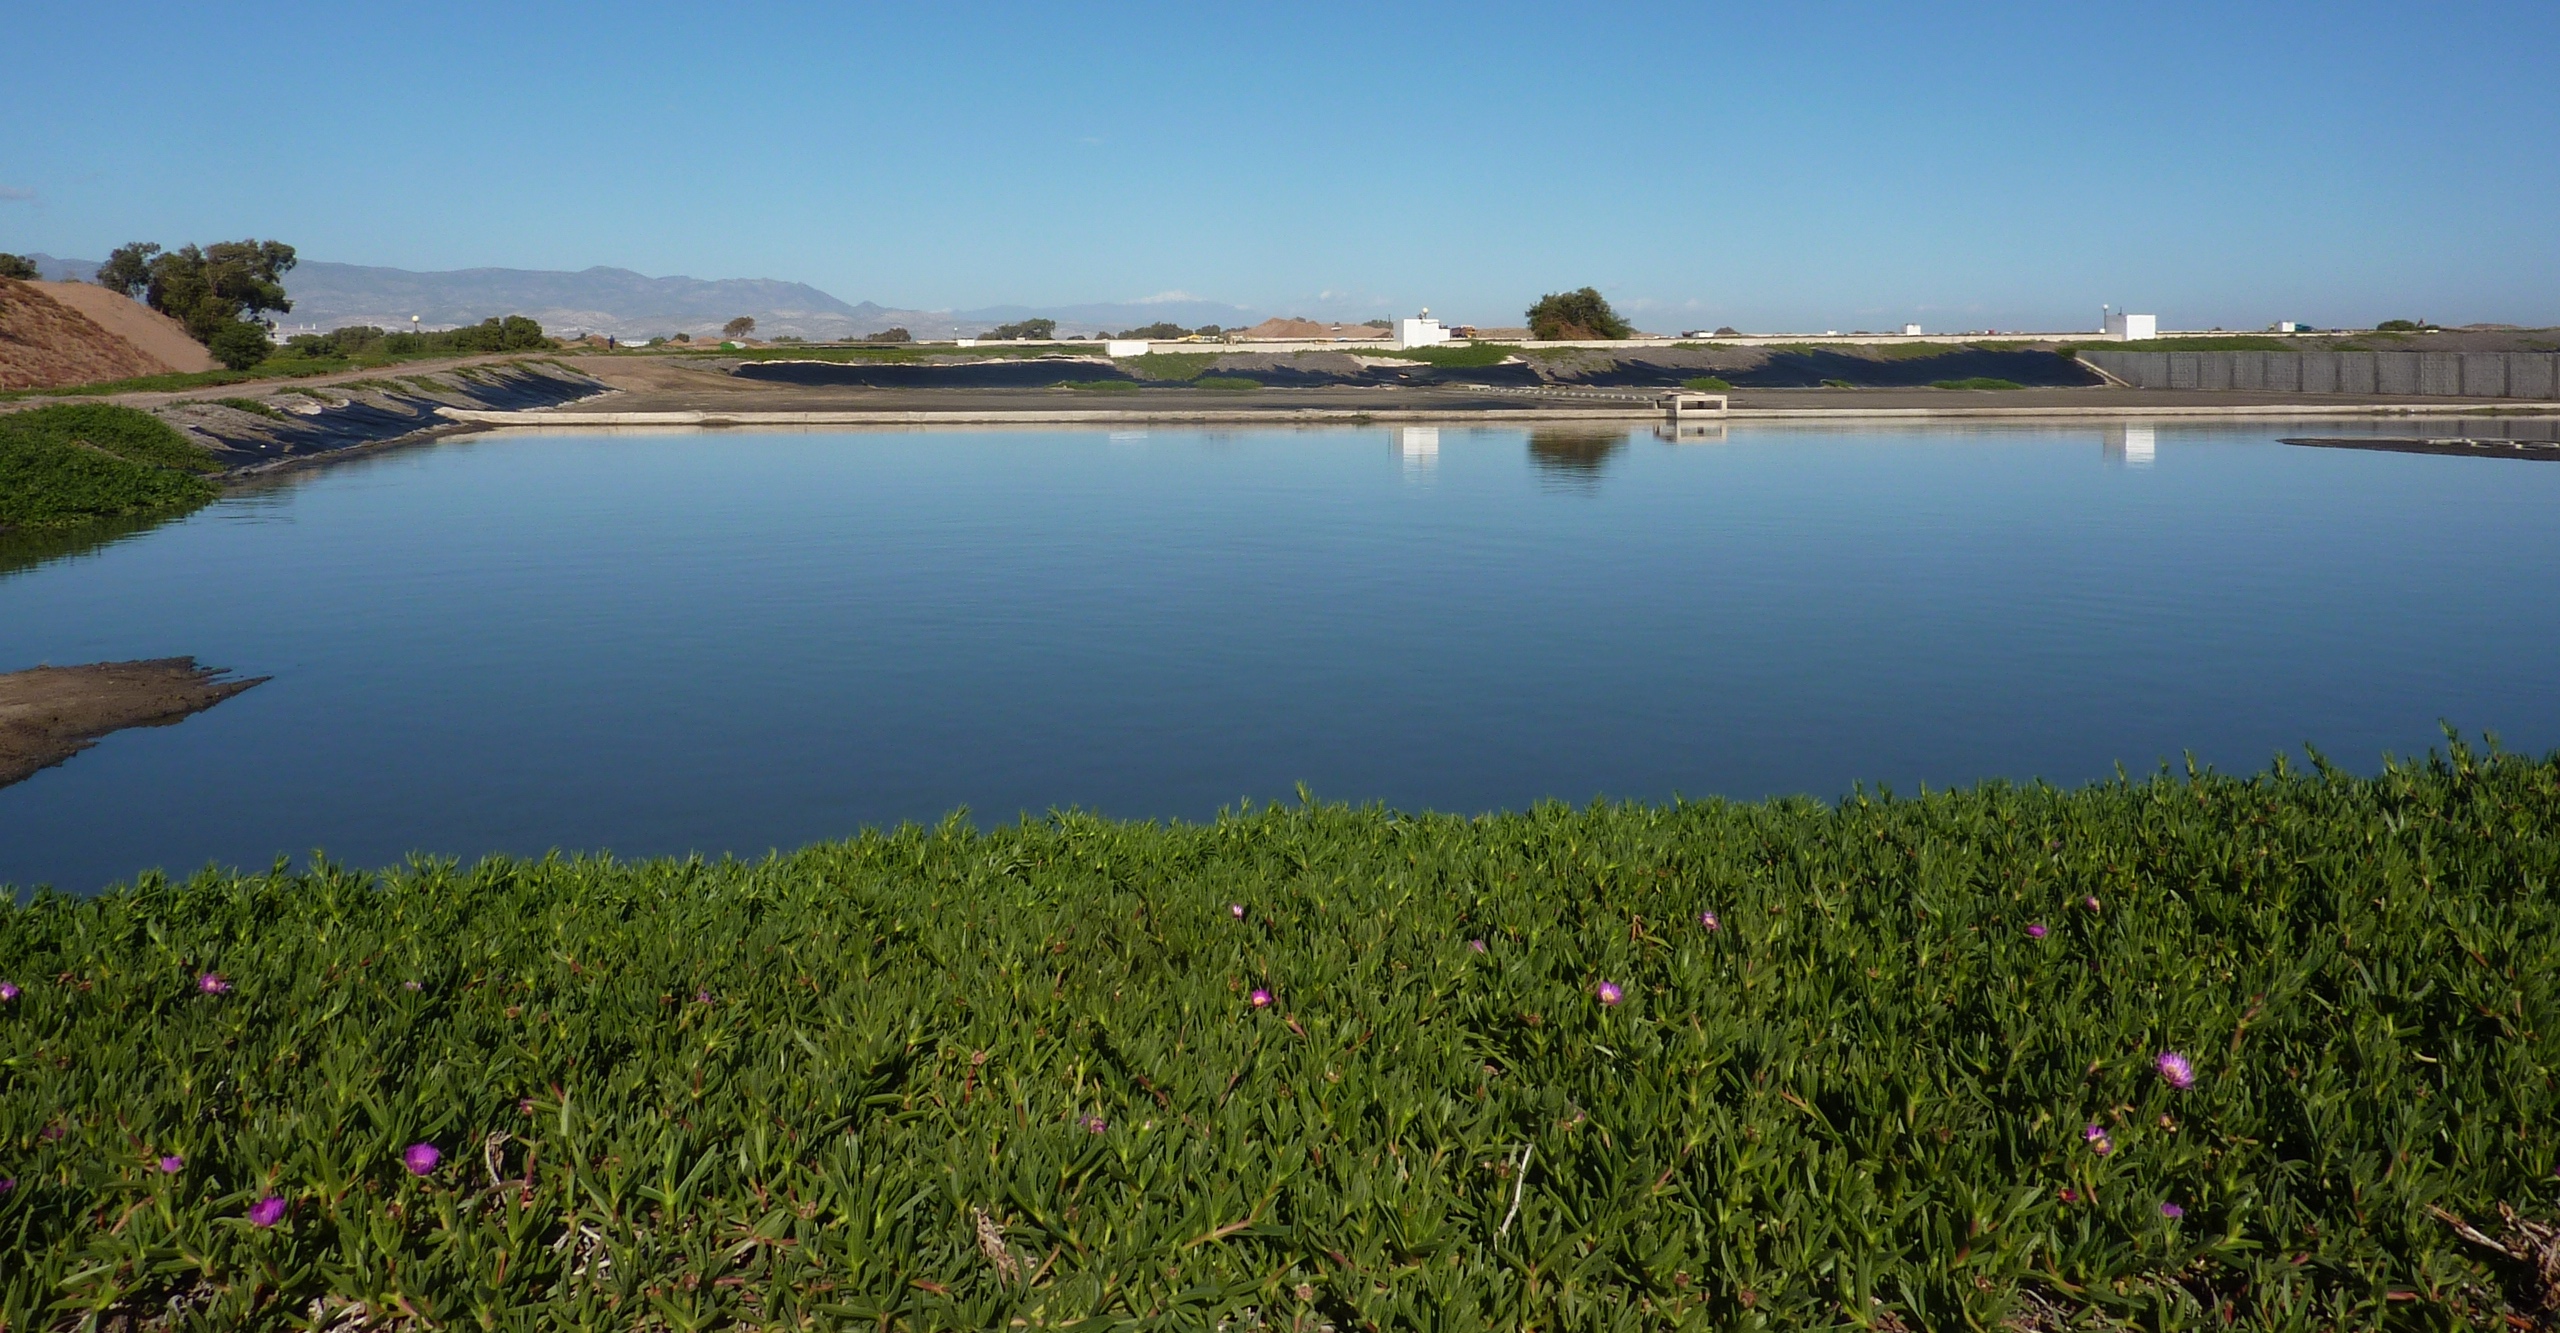 Traitement biologique des eaux usées. Bassin de lagunage de l’agglomération du Grand Agadir. © Lydia Herrmann, Flickr, CC by 2.0